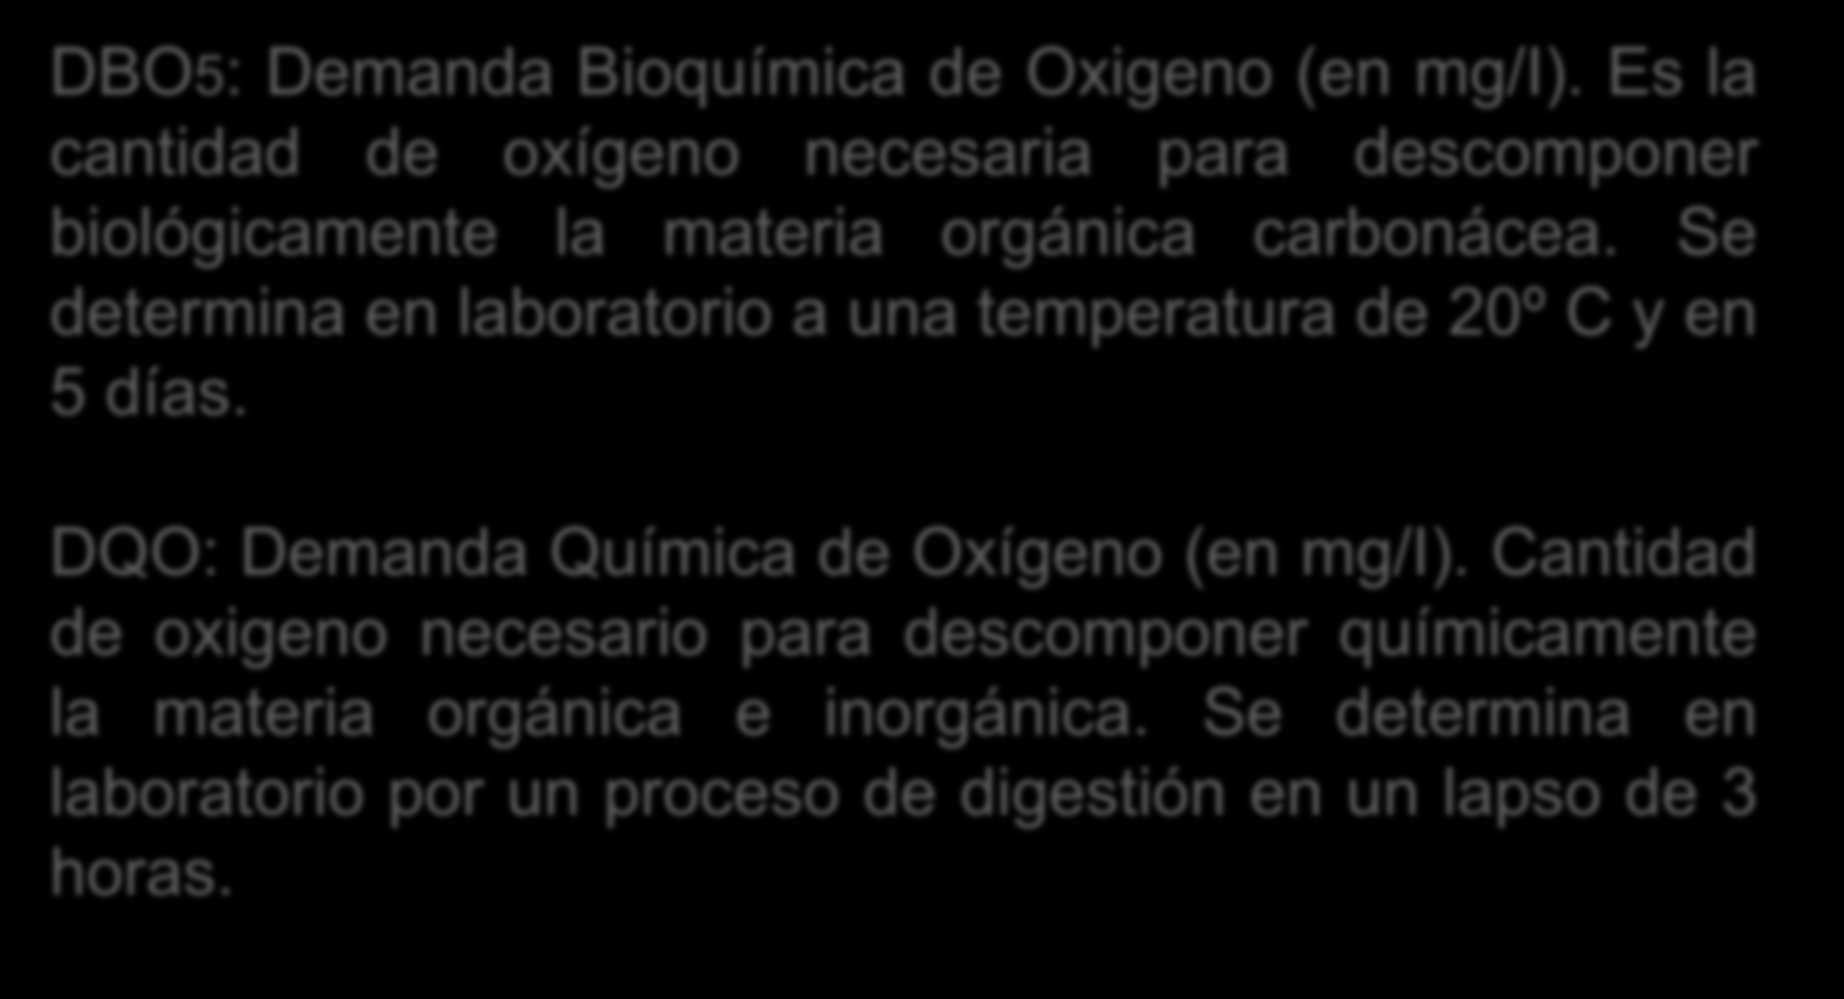 REGLAMENTO EN MATERIA DE CONTAMINACION HIDRICA DBO5: Demanda Bioquímica de Oxigeno (en mg/i). Es la cantidad de oxígeno necesaria para descomponer biológicamente la materia orgánica carbonácea.